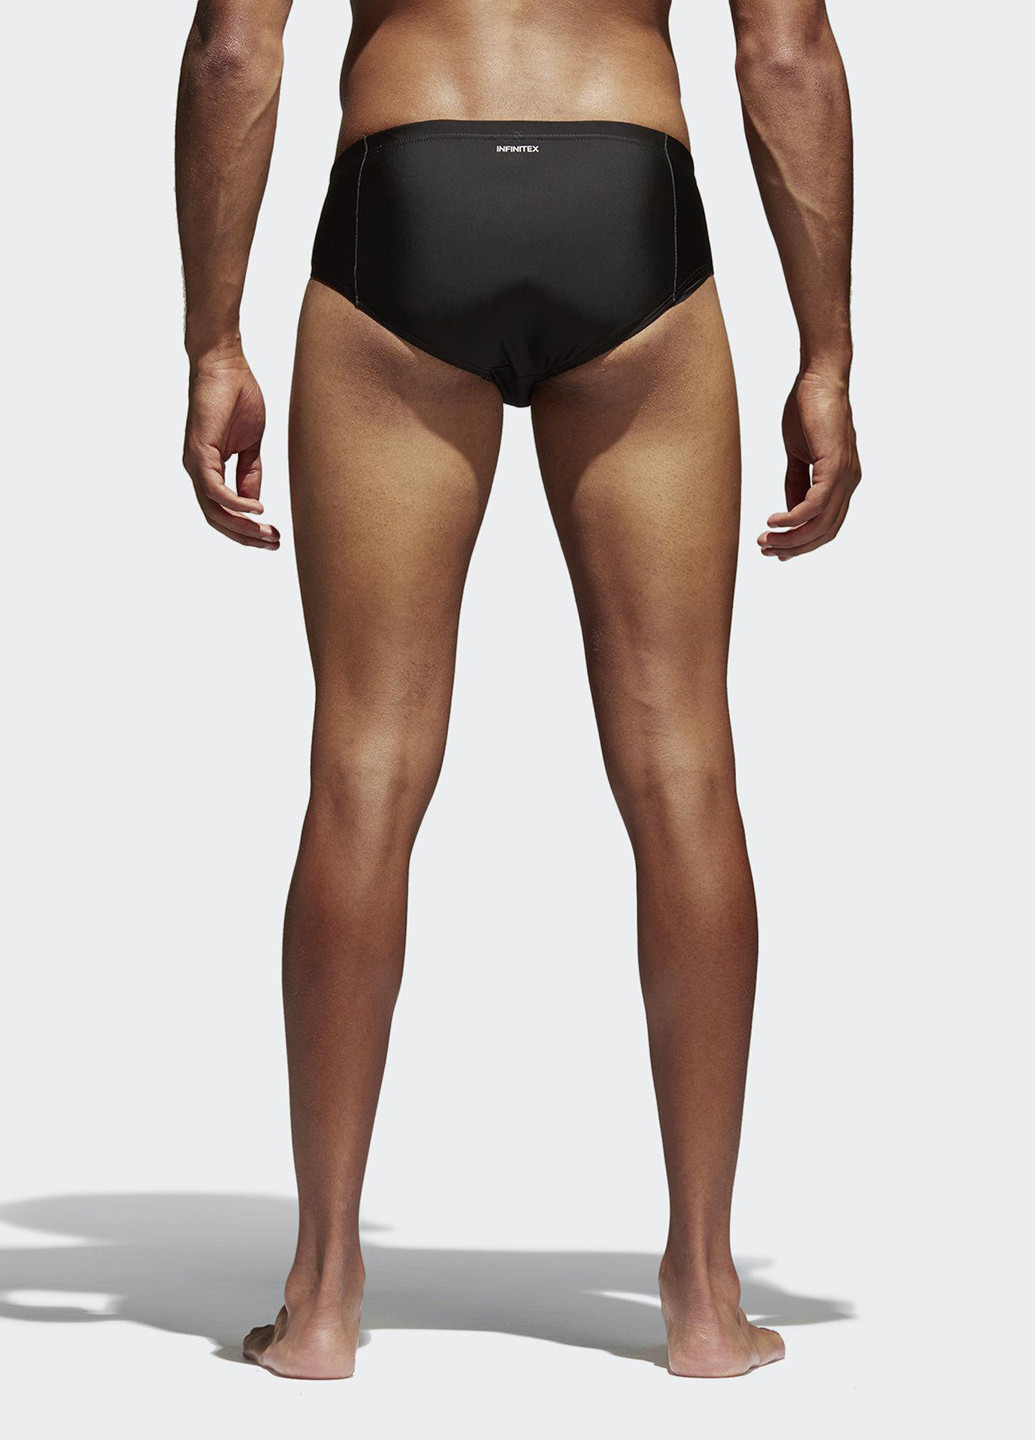 Мужские черные спортивные плавки купальные adidas